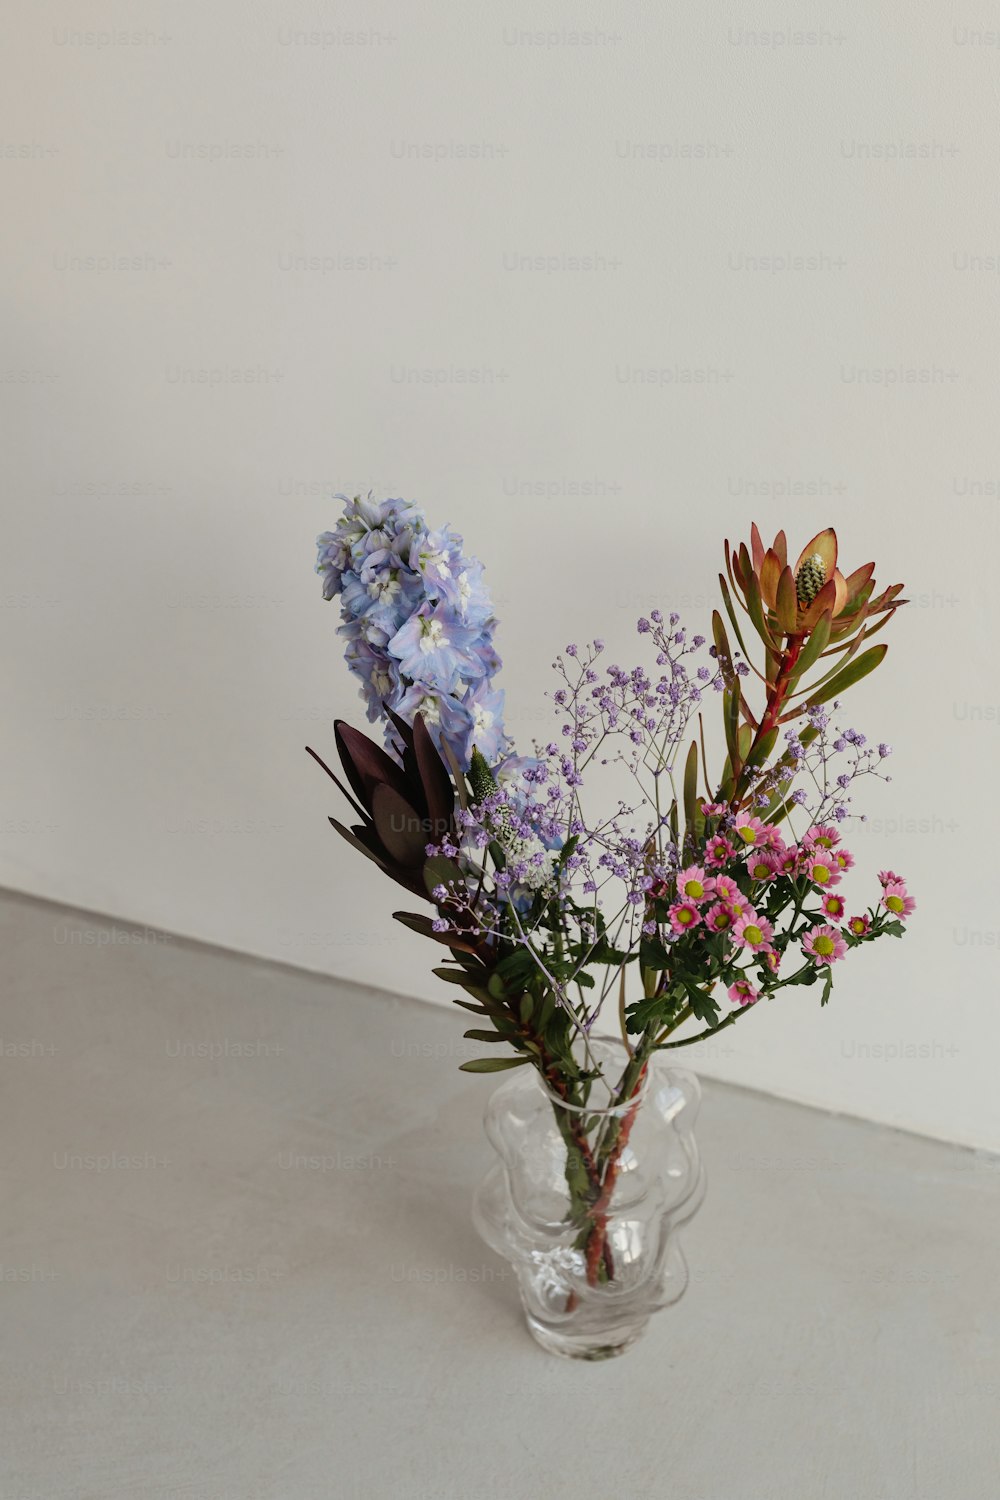 un vaso di vetro pieno di fiori sopra un tavolo